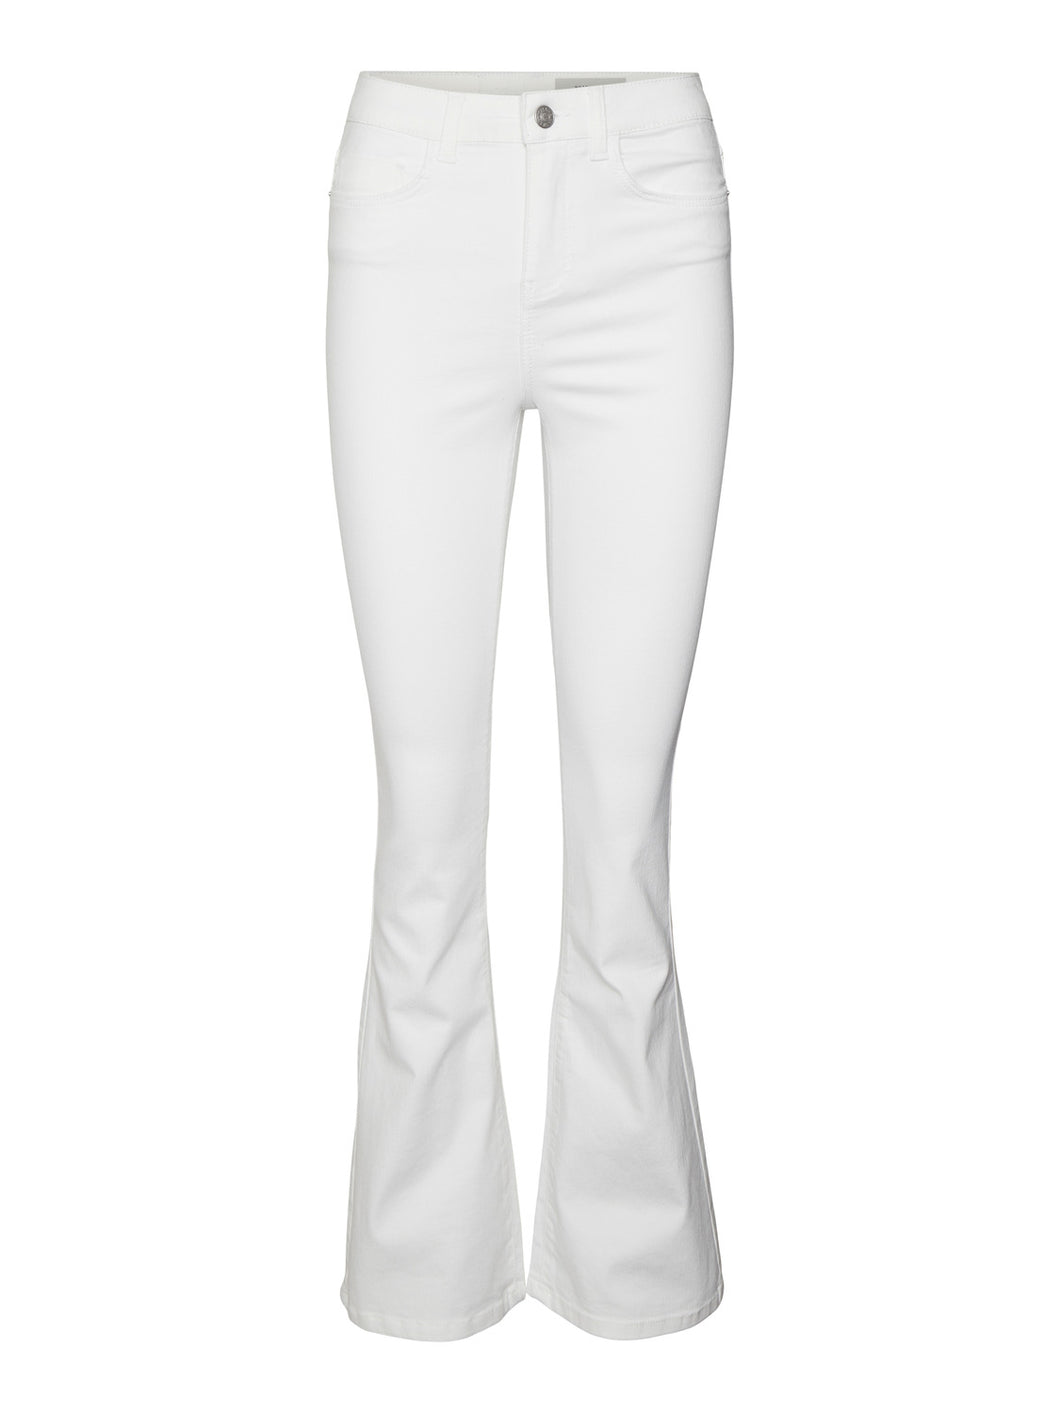 NMSALLIE Jeans - Bright White